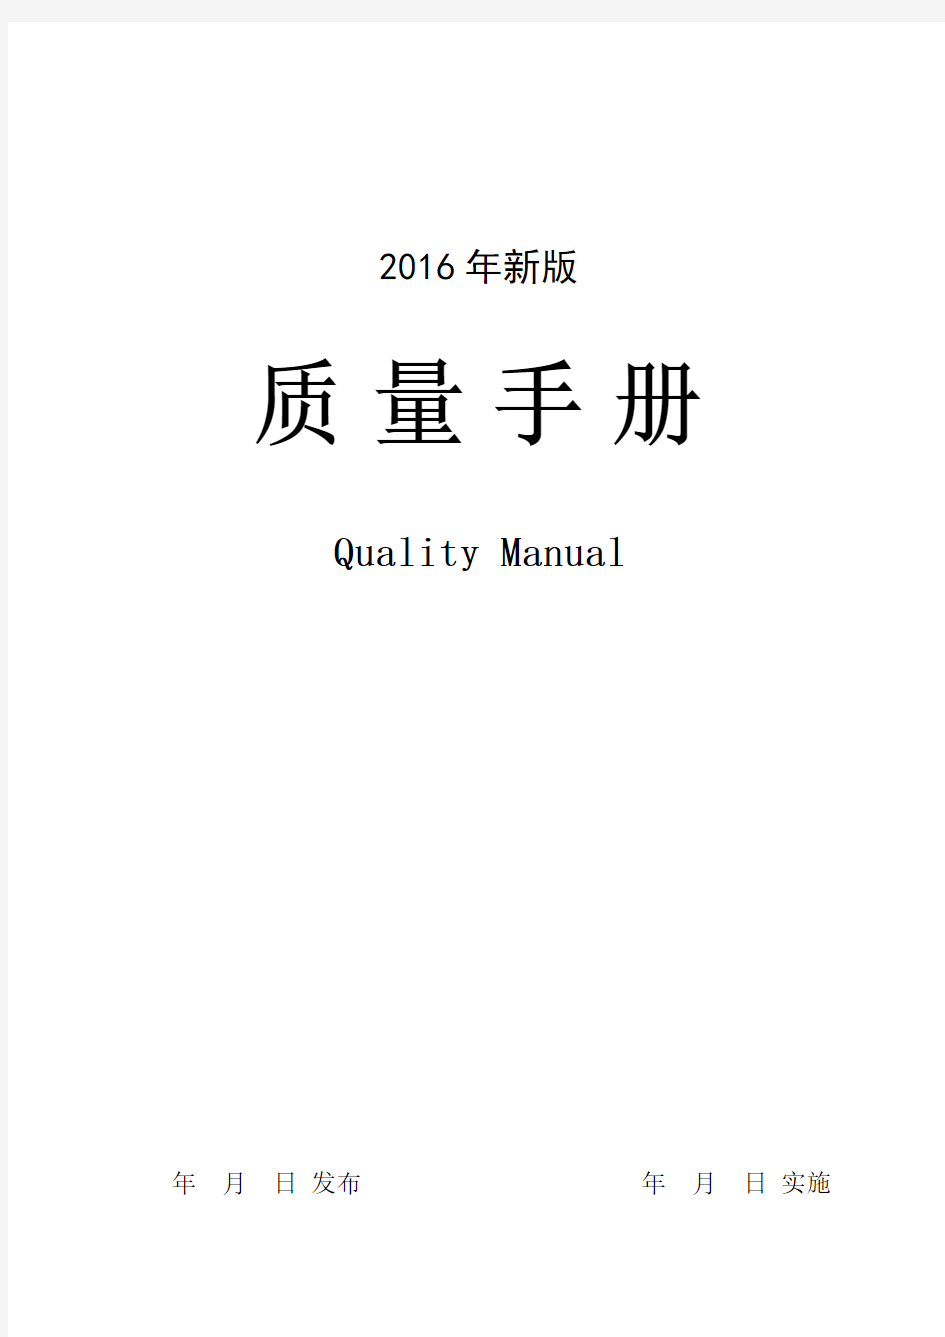 2016新版准则《质量手册》(Quality Manual)